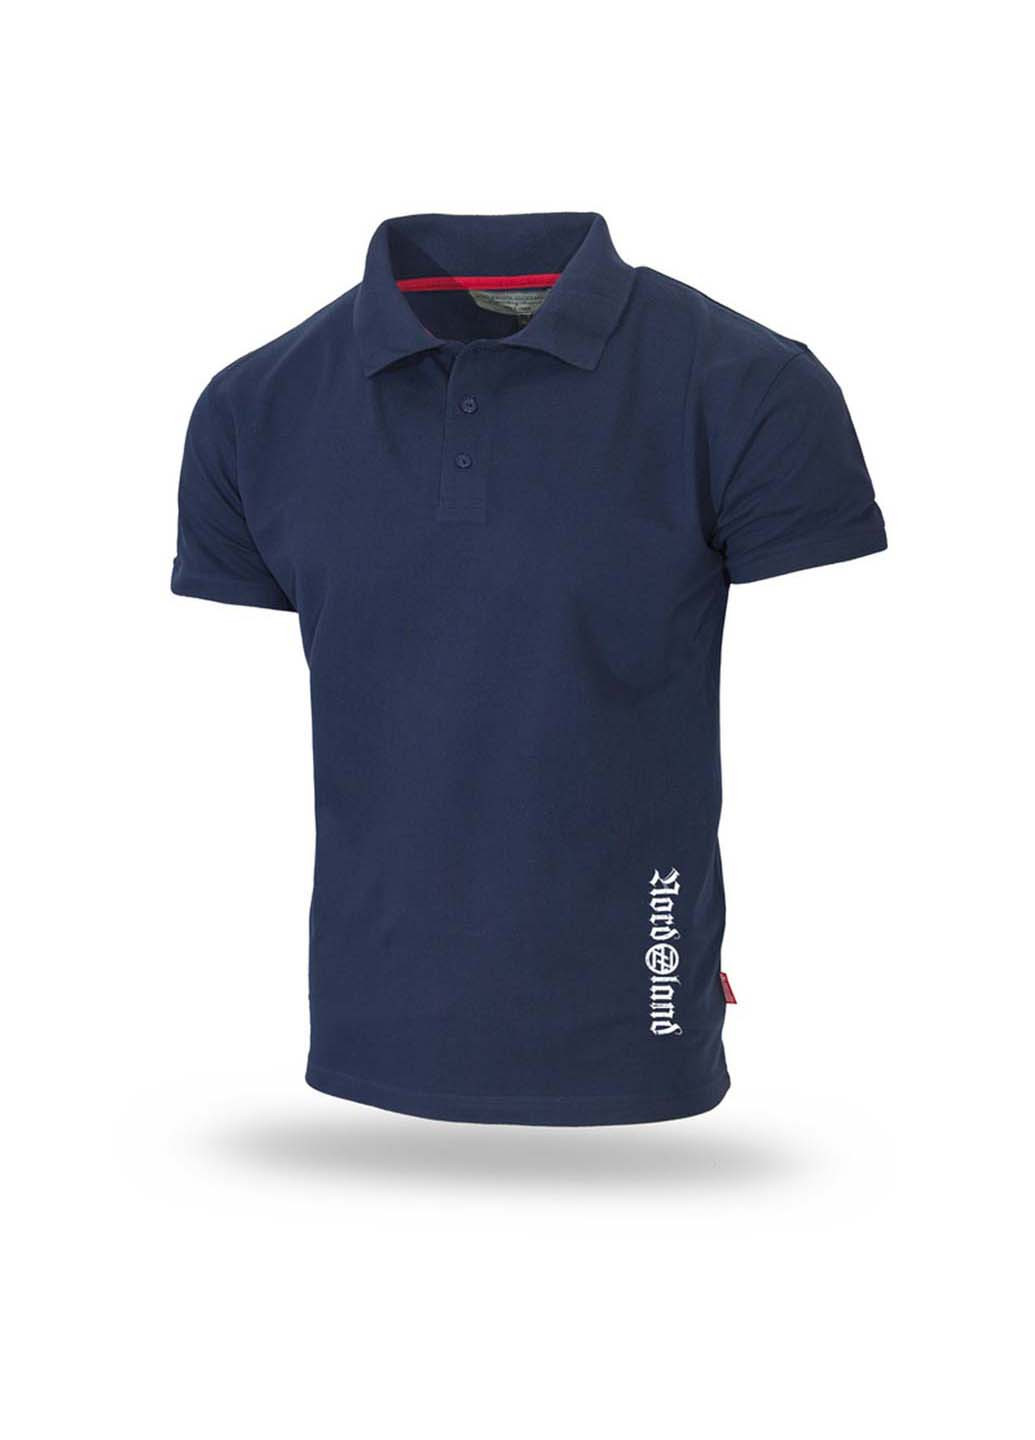 Темно-синяя футболка-футболка поло для мужчин Dobermans Aggressive